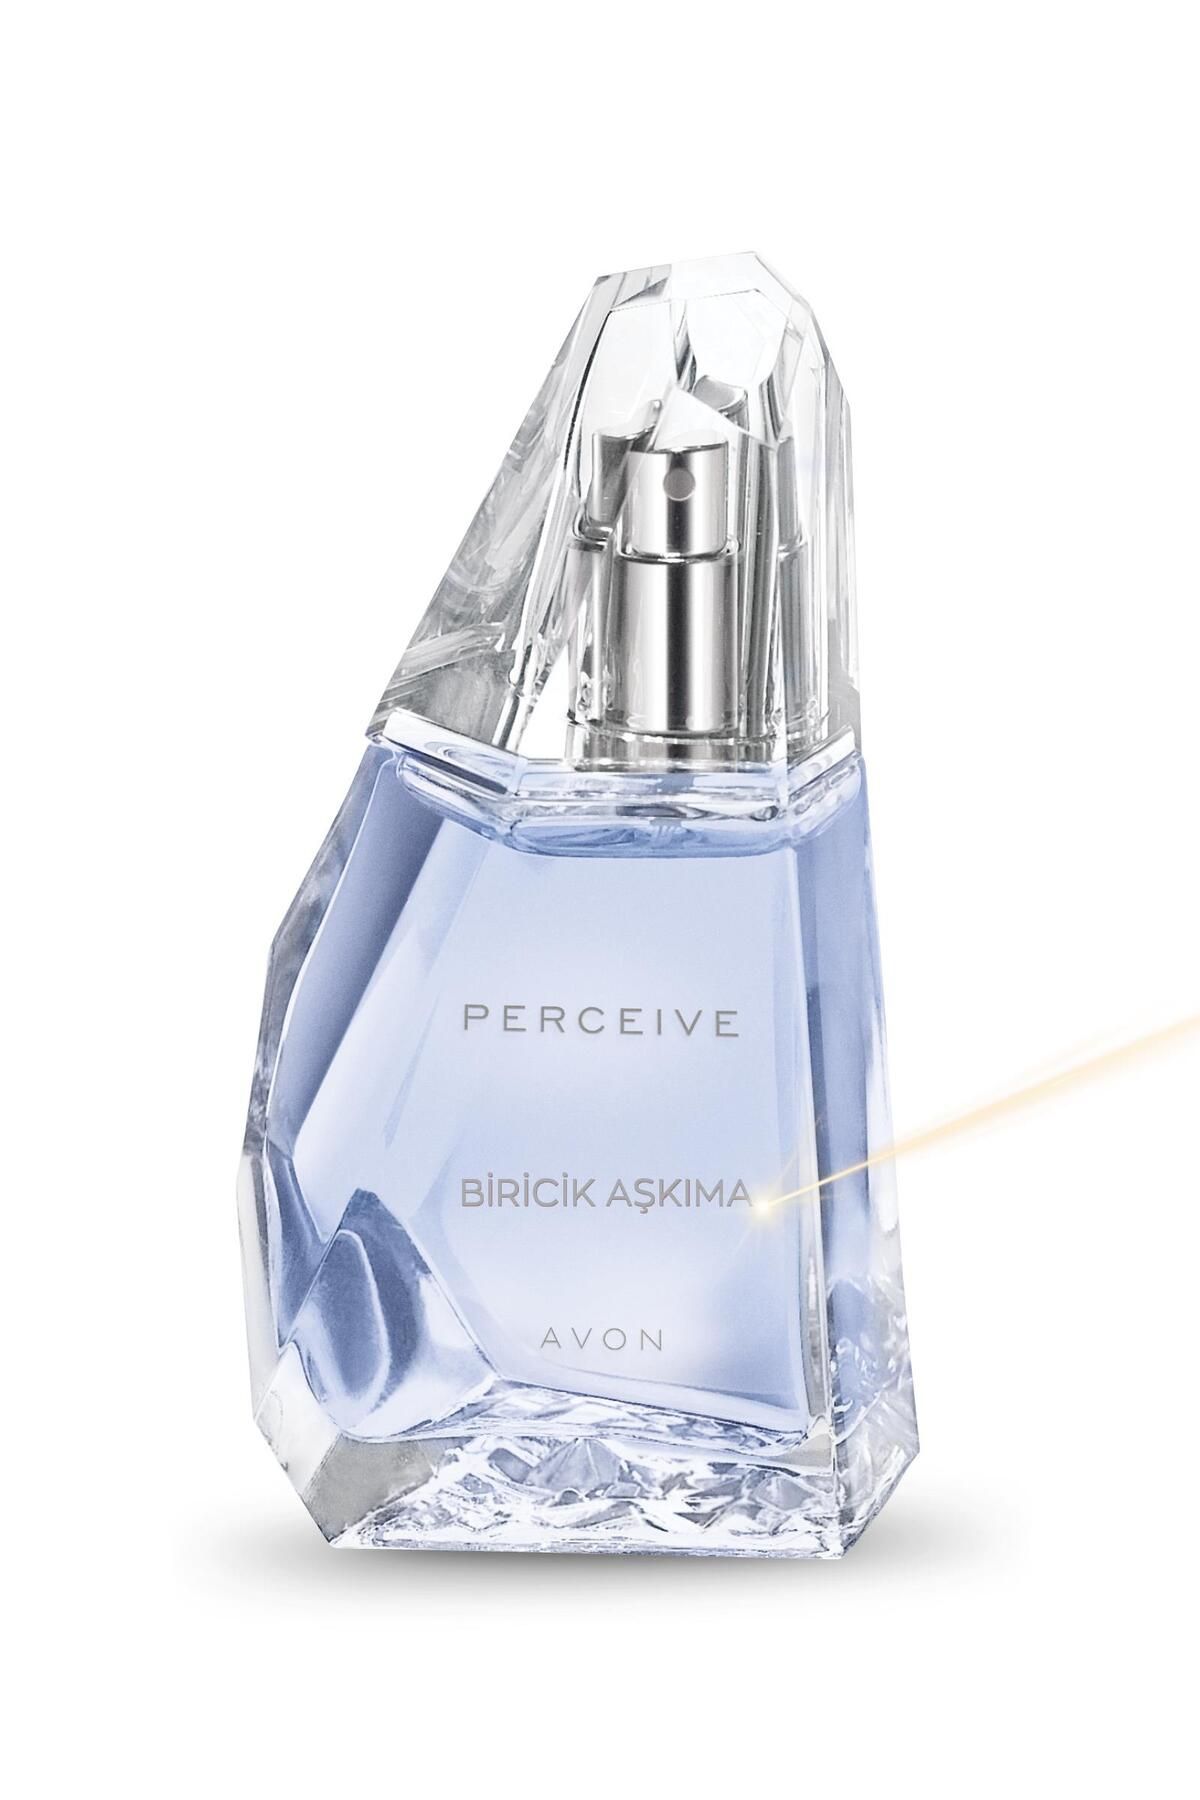 Avon Perceive Biricik Aşkıma Yazılı Kadın Parfüm Edp 50 Ml.